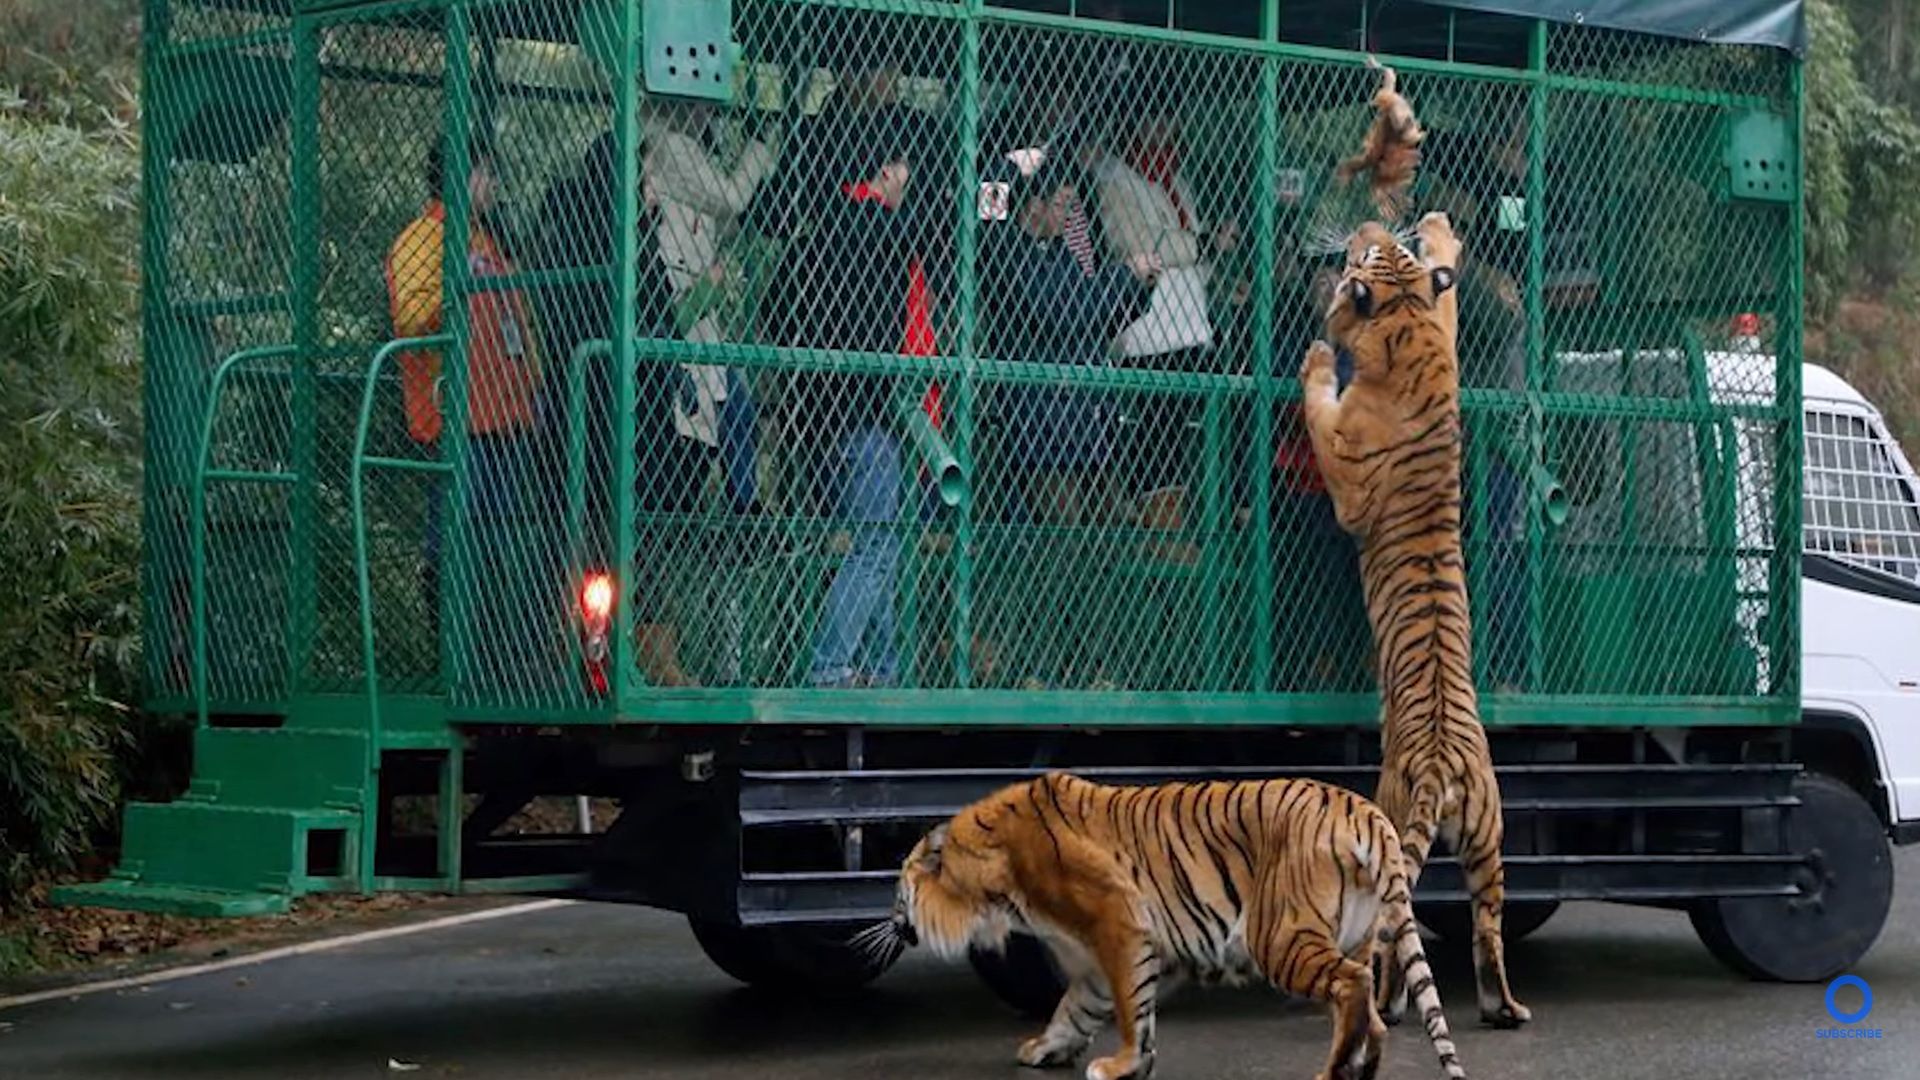 Zoo zamyka odwiedzających w klatkach. Zwierzęta wędrują swobodnie